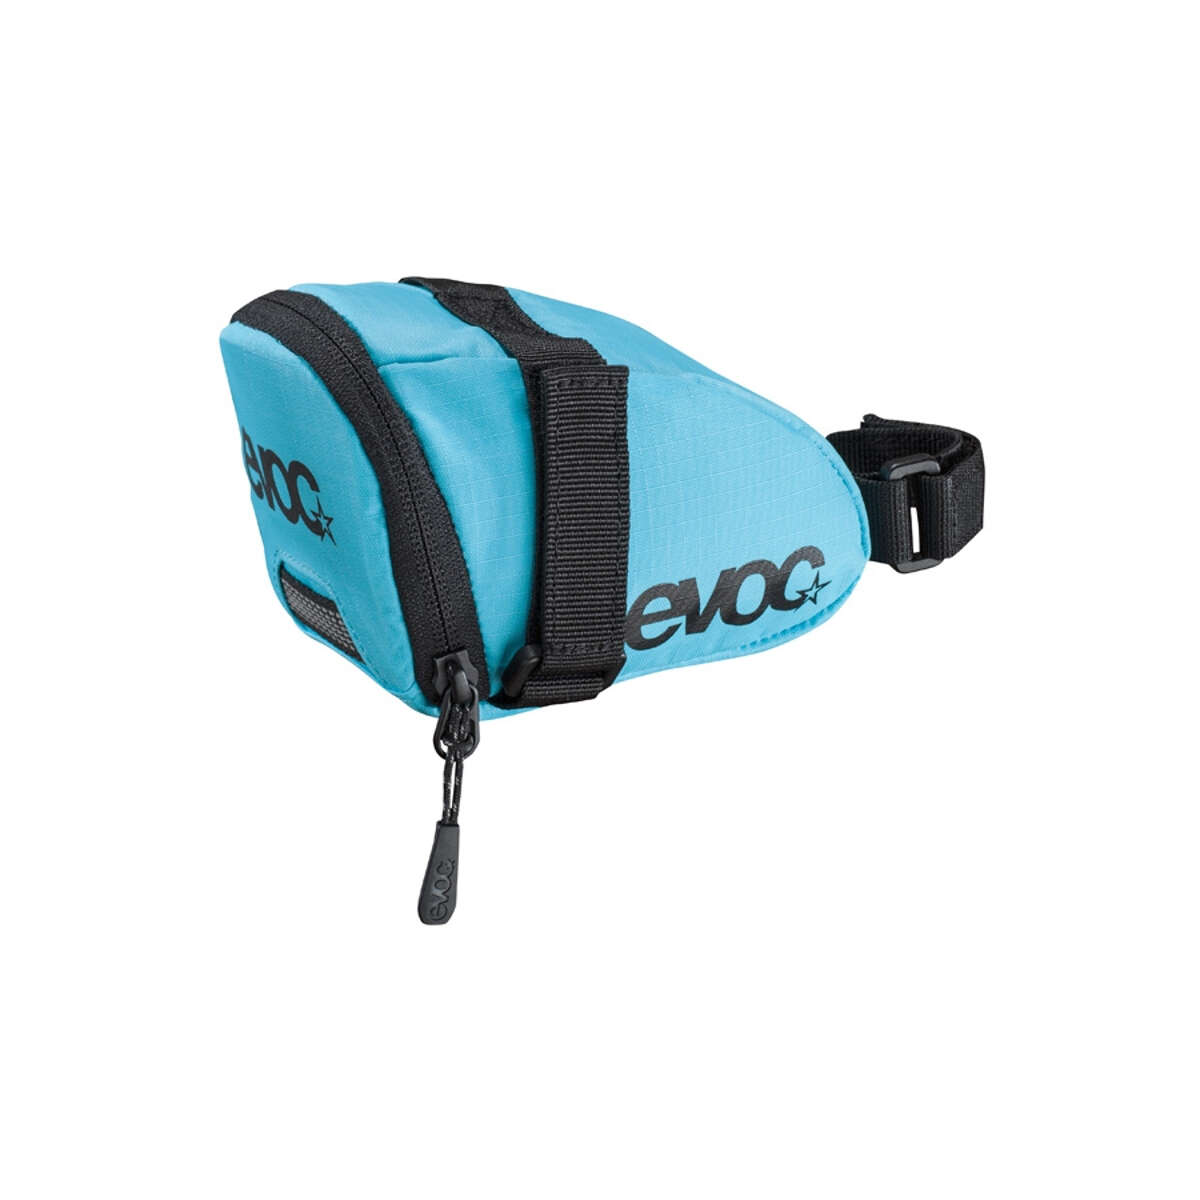 Evoc Saddle Bag  Neon Blue - 0.7 Liter